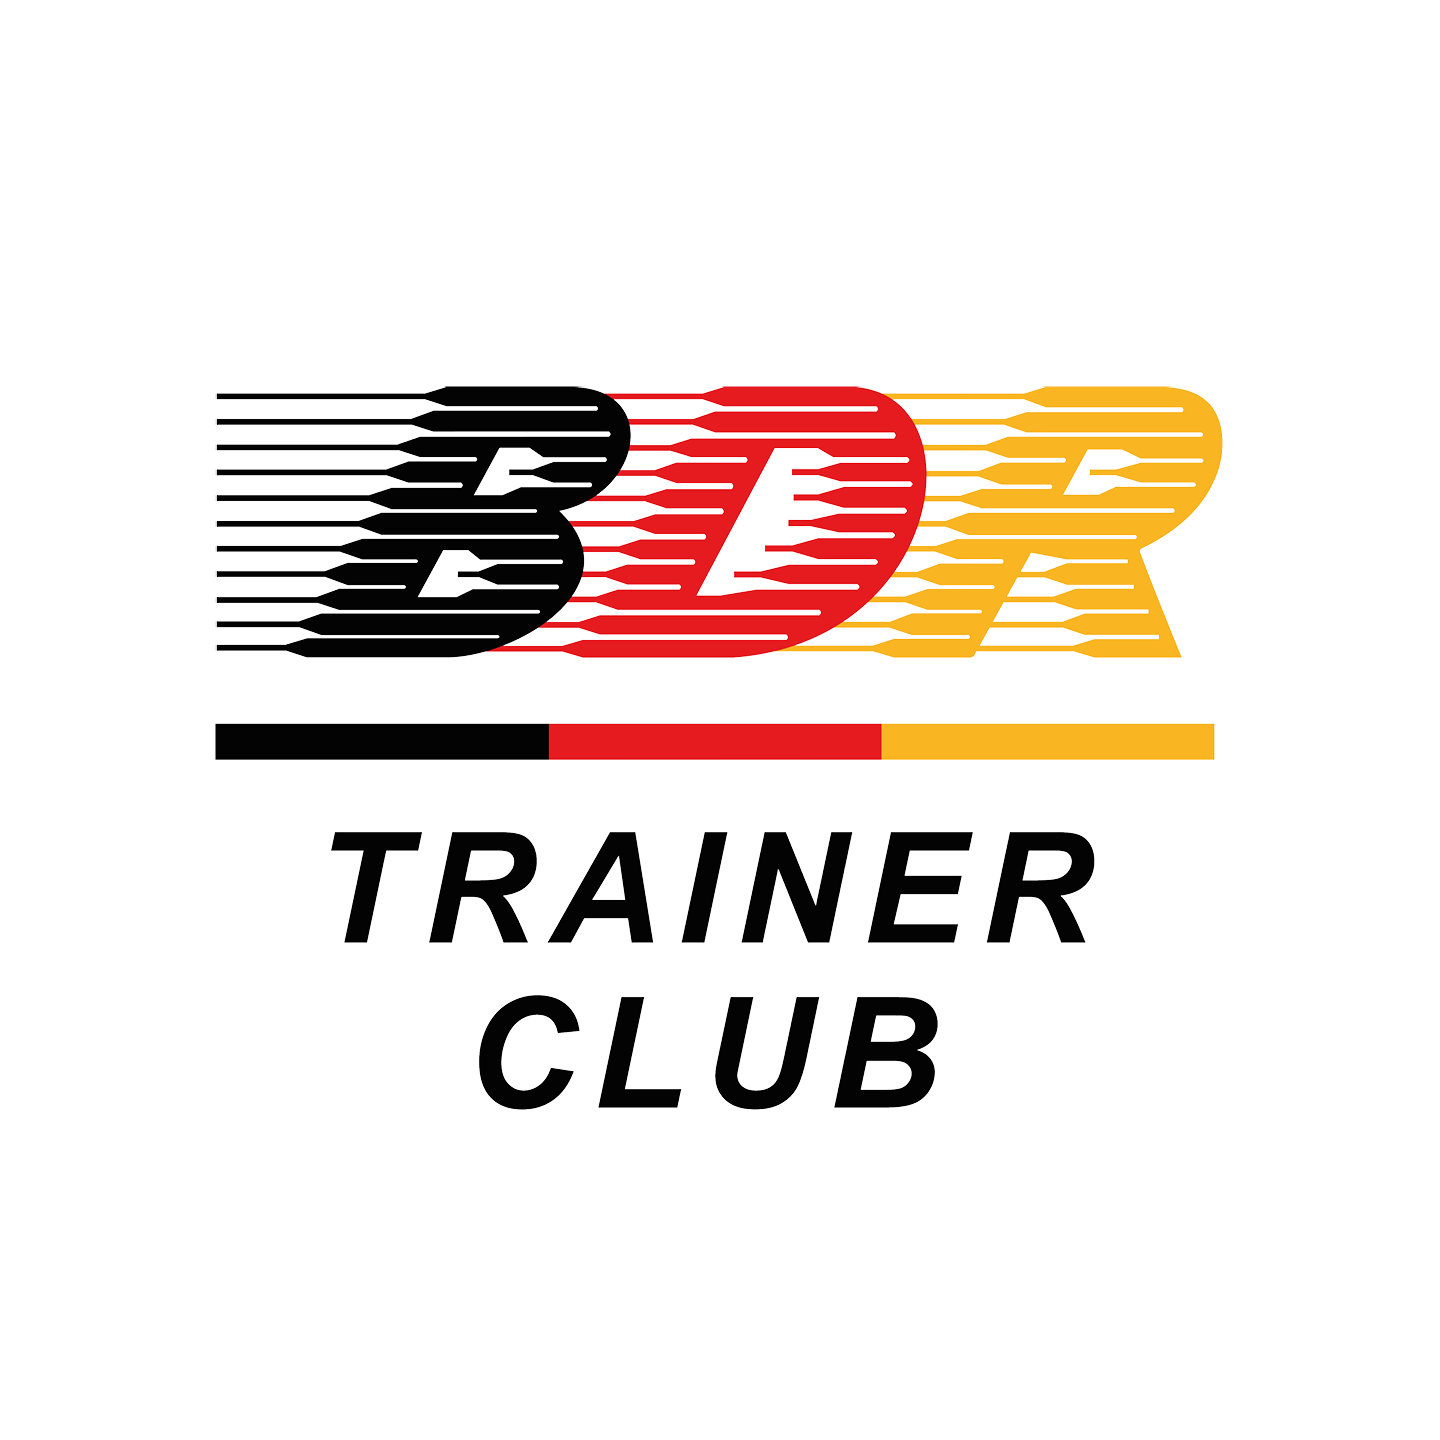 (c) Bdr-trainerclub.de